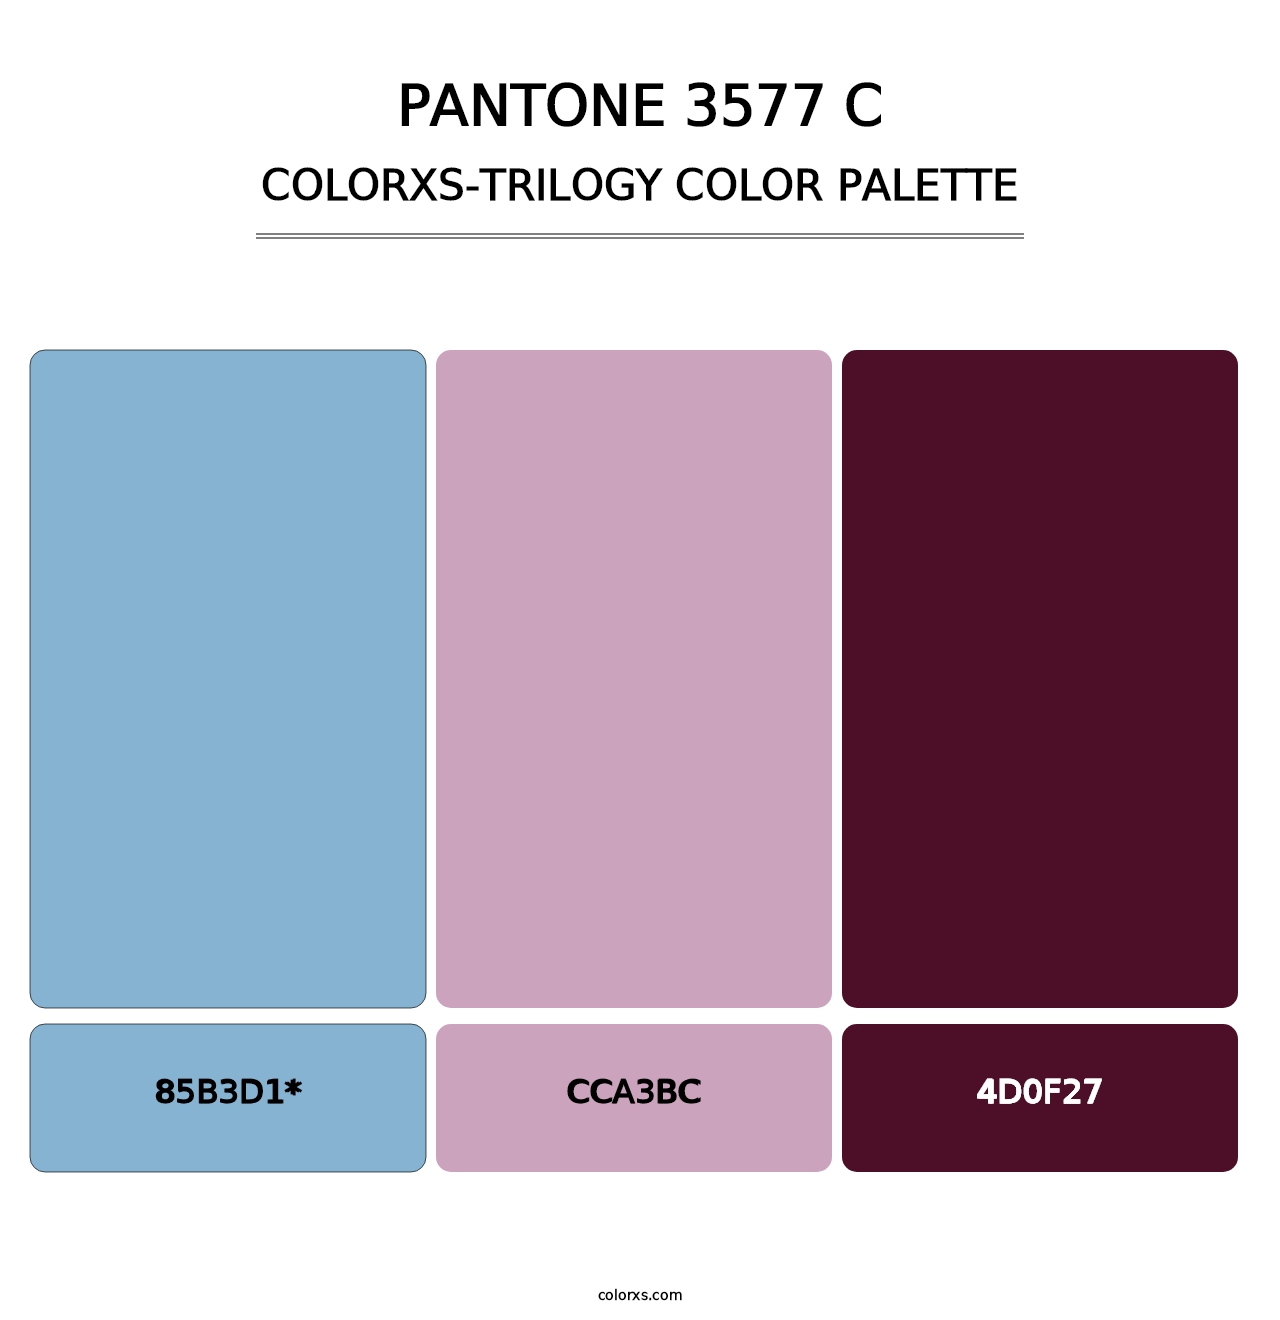 PANTONE 3577 C - Colorxs Trilogy Palette